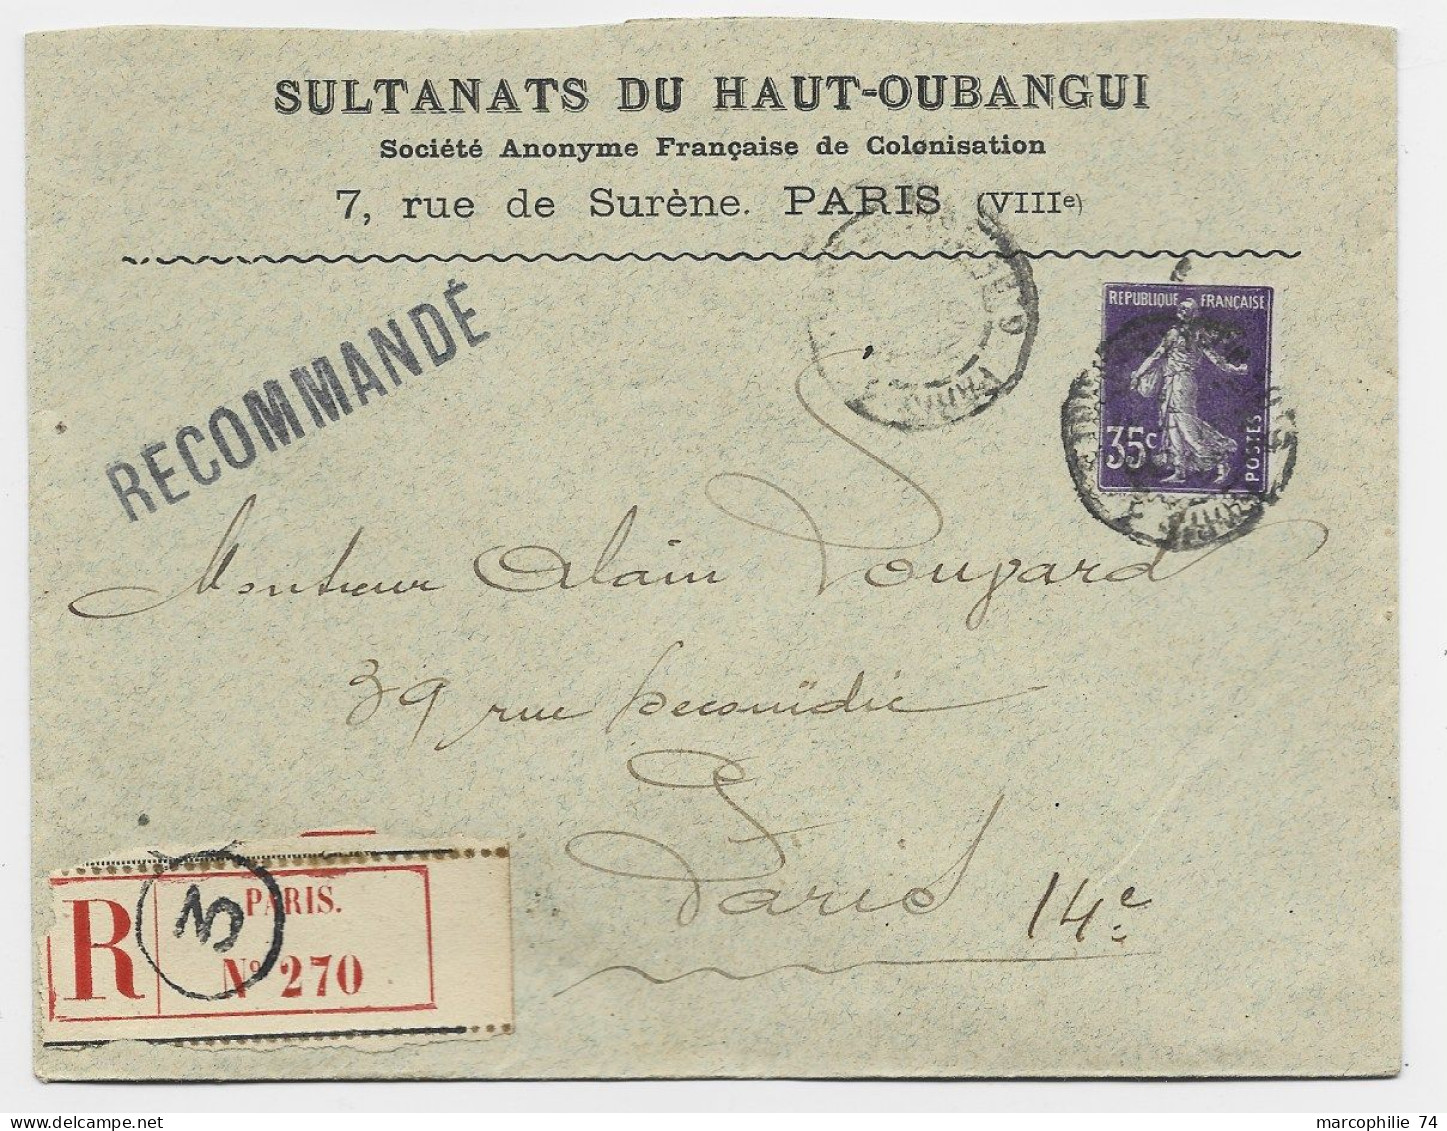 FRANCE SEMEUSE 35C LETTRE REC COVER ENTETE SULTANATS DU HAUT OUBANGUI PARIS VIIIE 1914 - Briefe U. Dokumente